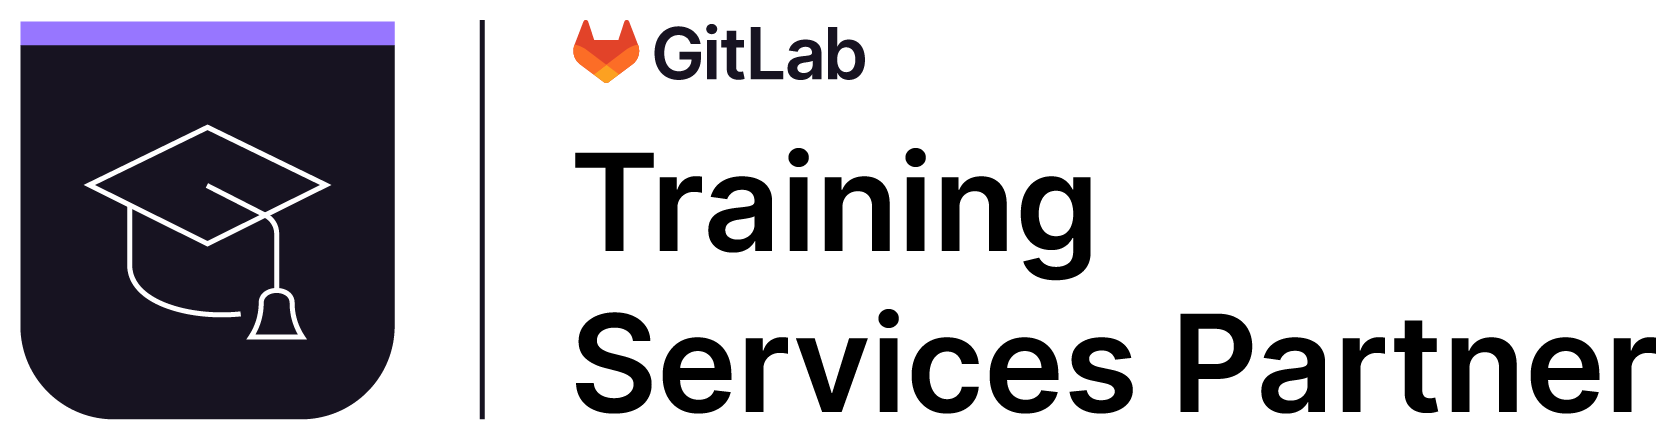 GitLab Training Services Partner Badge